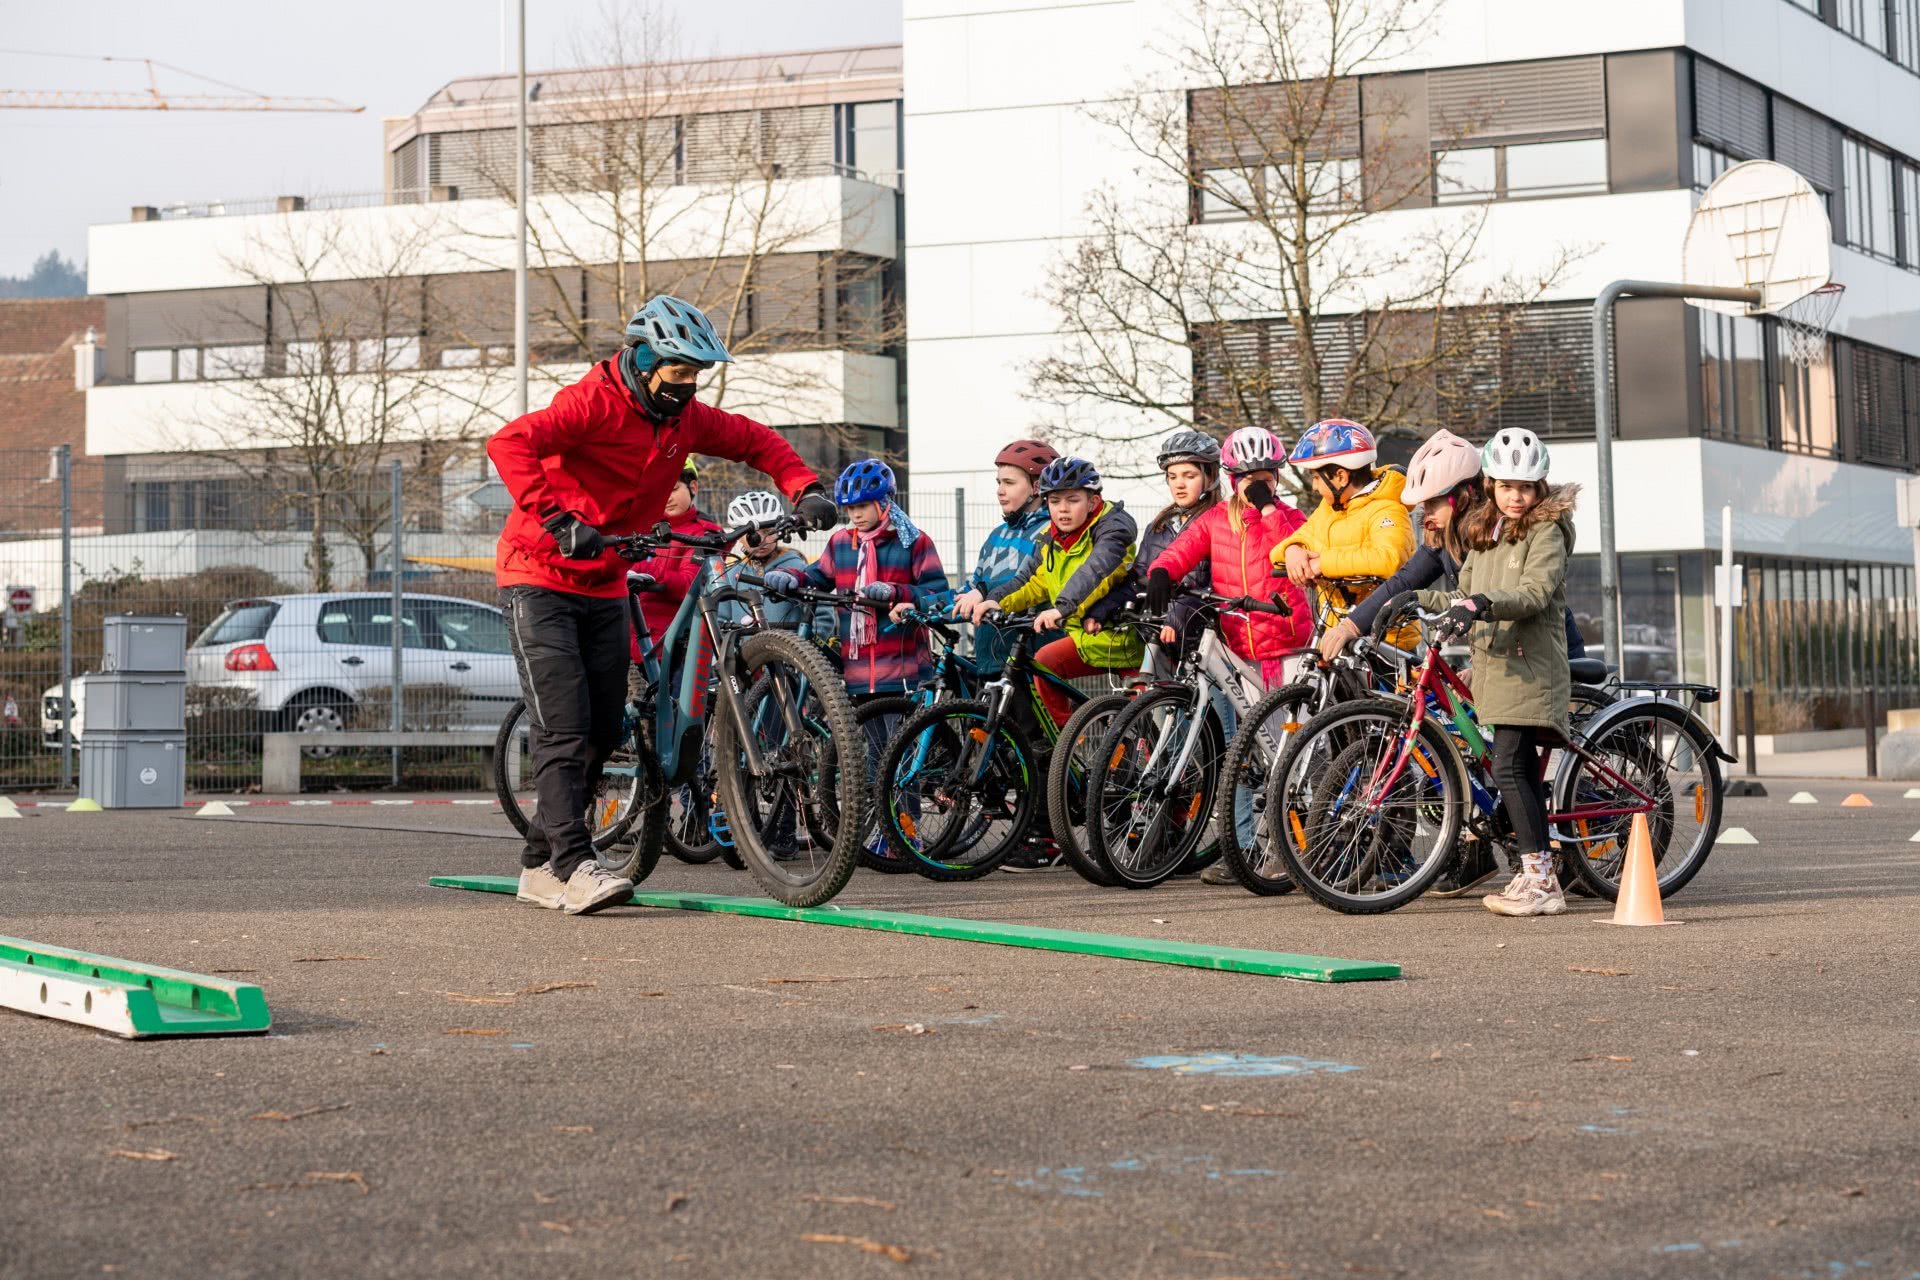 Foto simbolica: Un insegnante mentre insegna de ragazzi con la bici